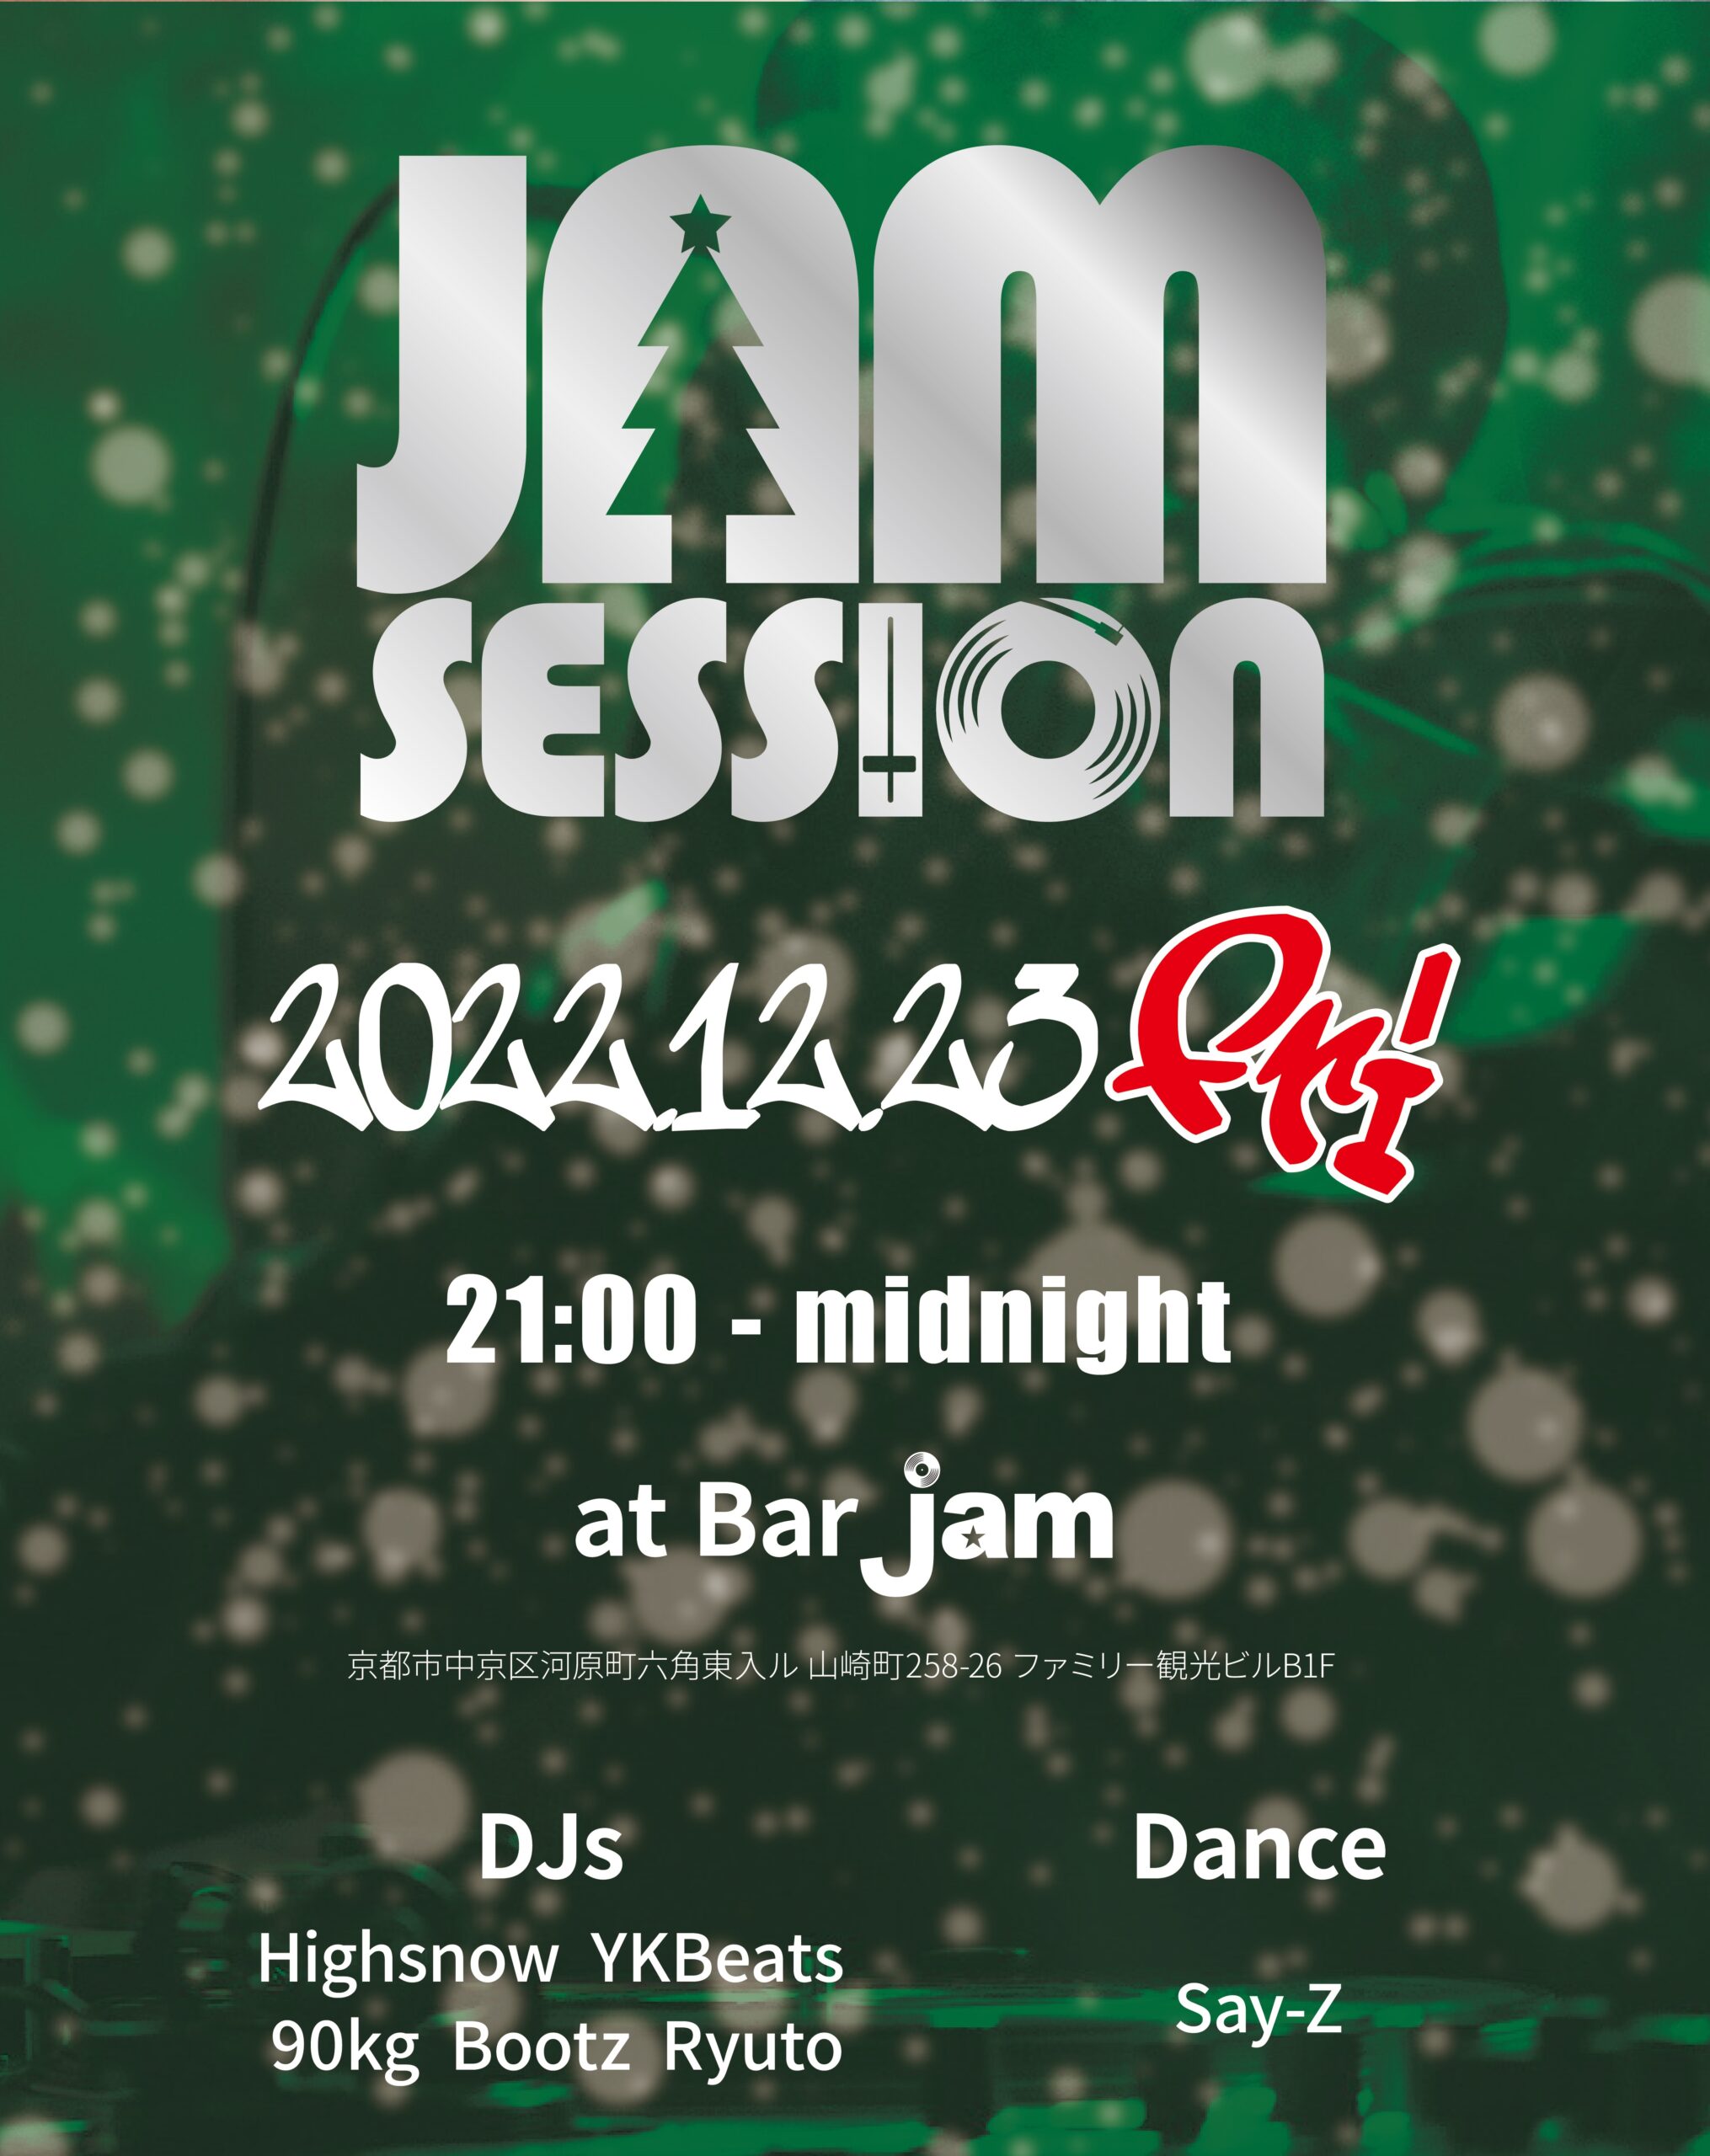 JAM SESSION @bar_jam Kyoto 2022.12.23 fri